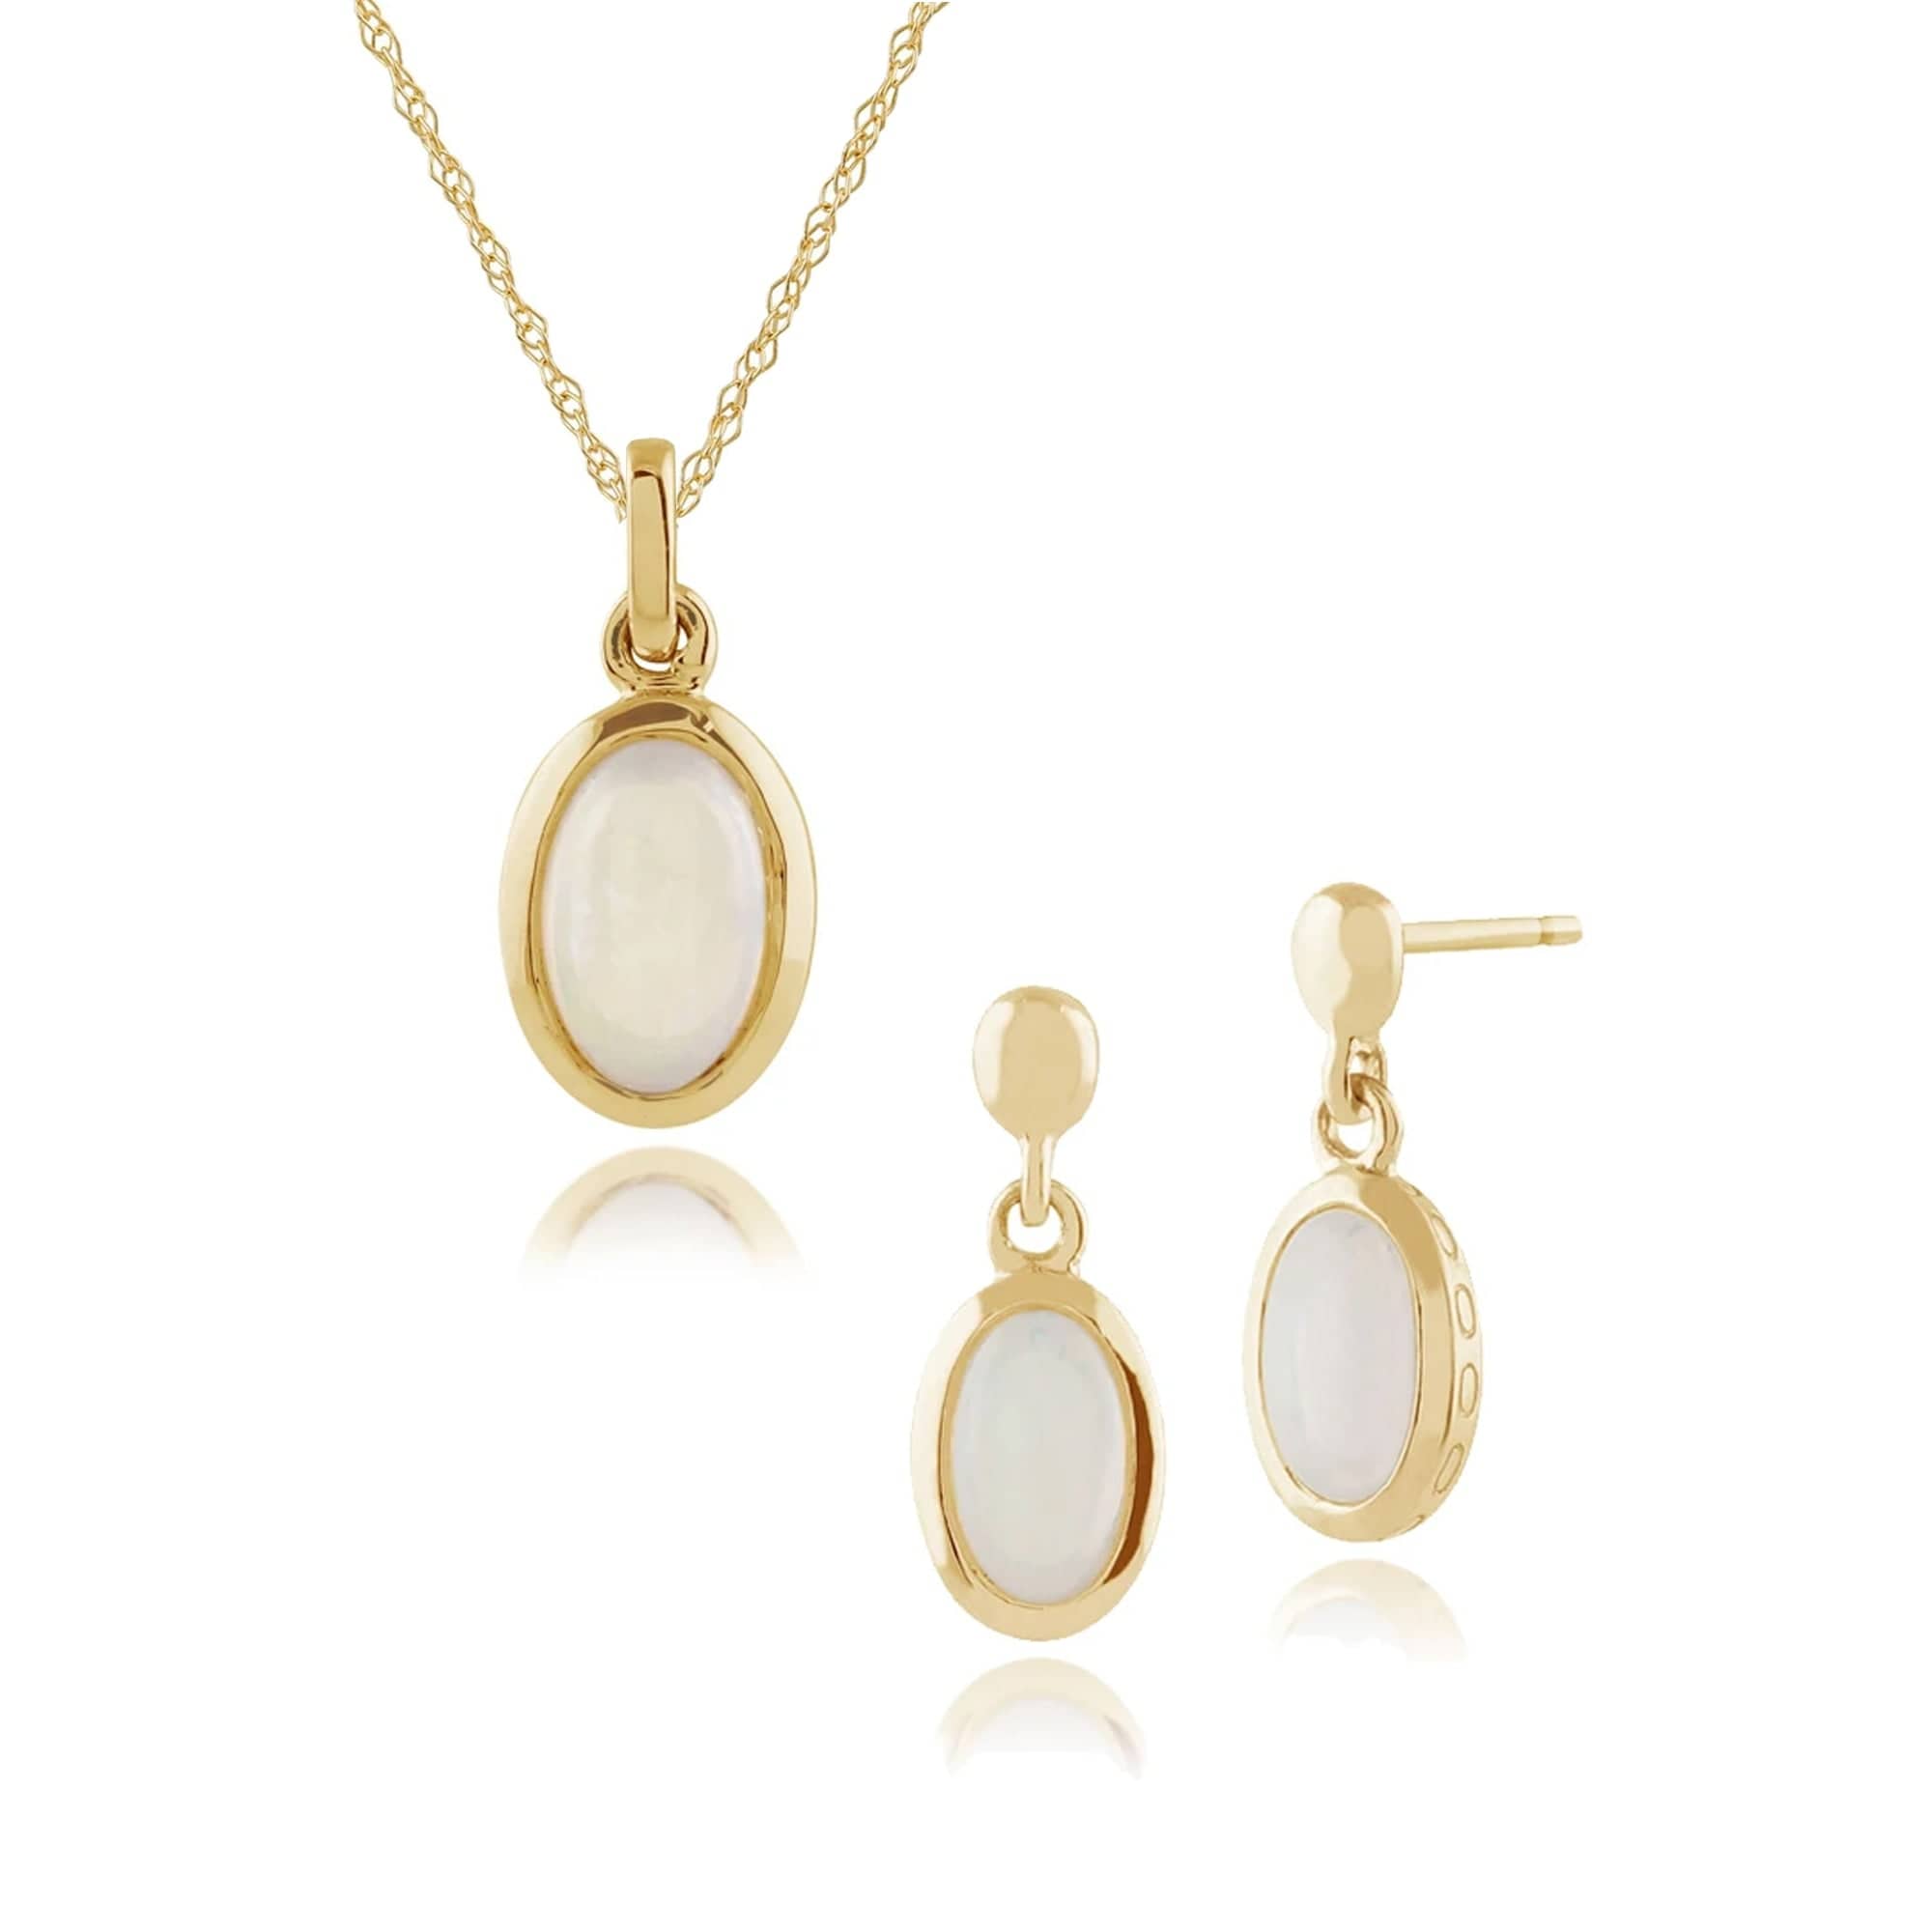 135E1203019-135P1566019 Classic Oval Opal Single Stone Bezel Drop Earrings & Pendant Set in 9ct Yellow Gold 1